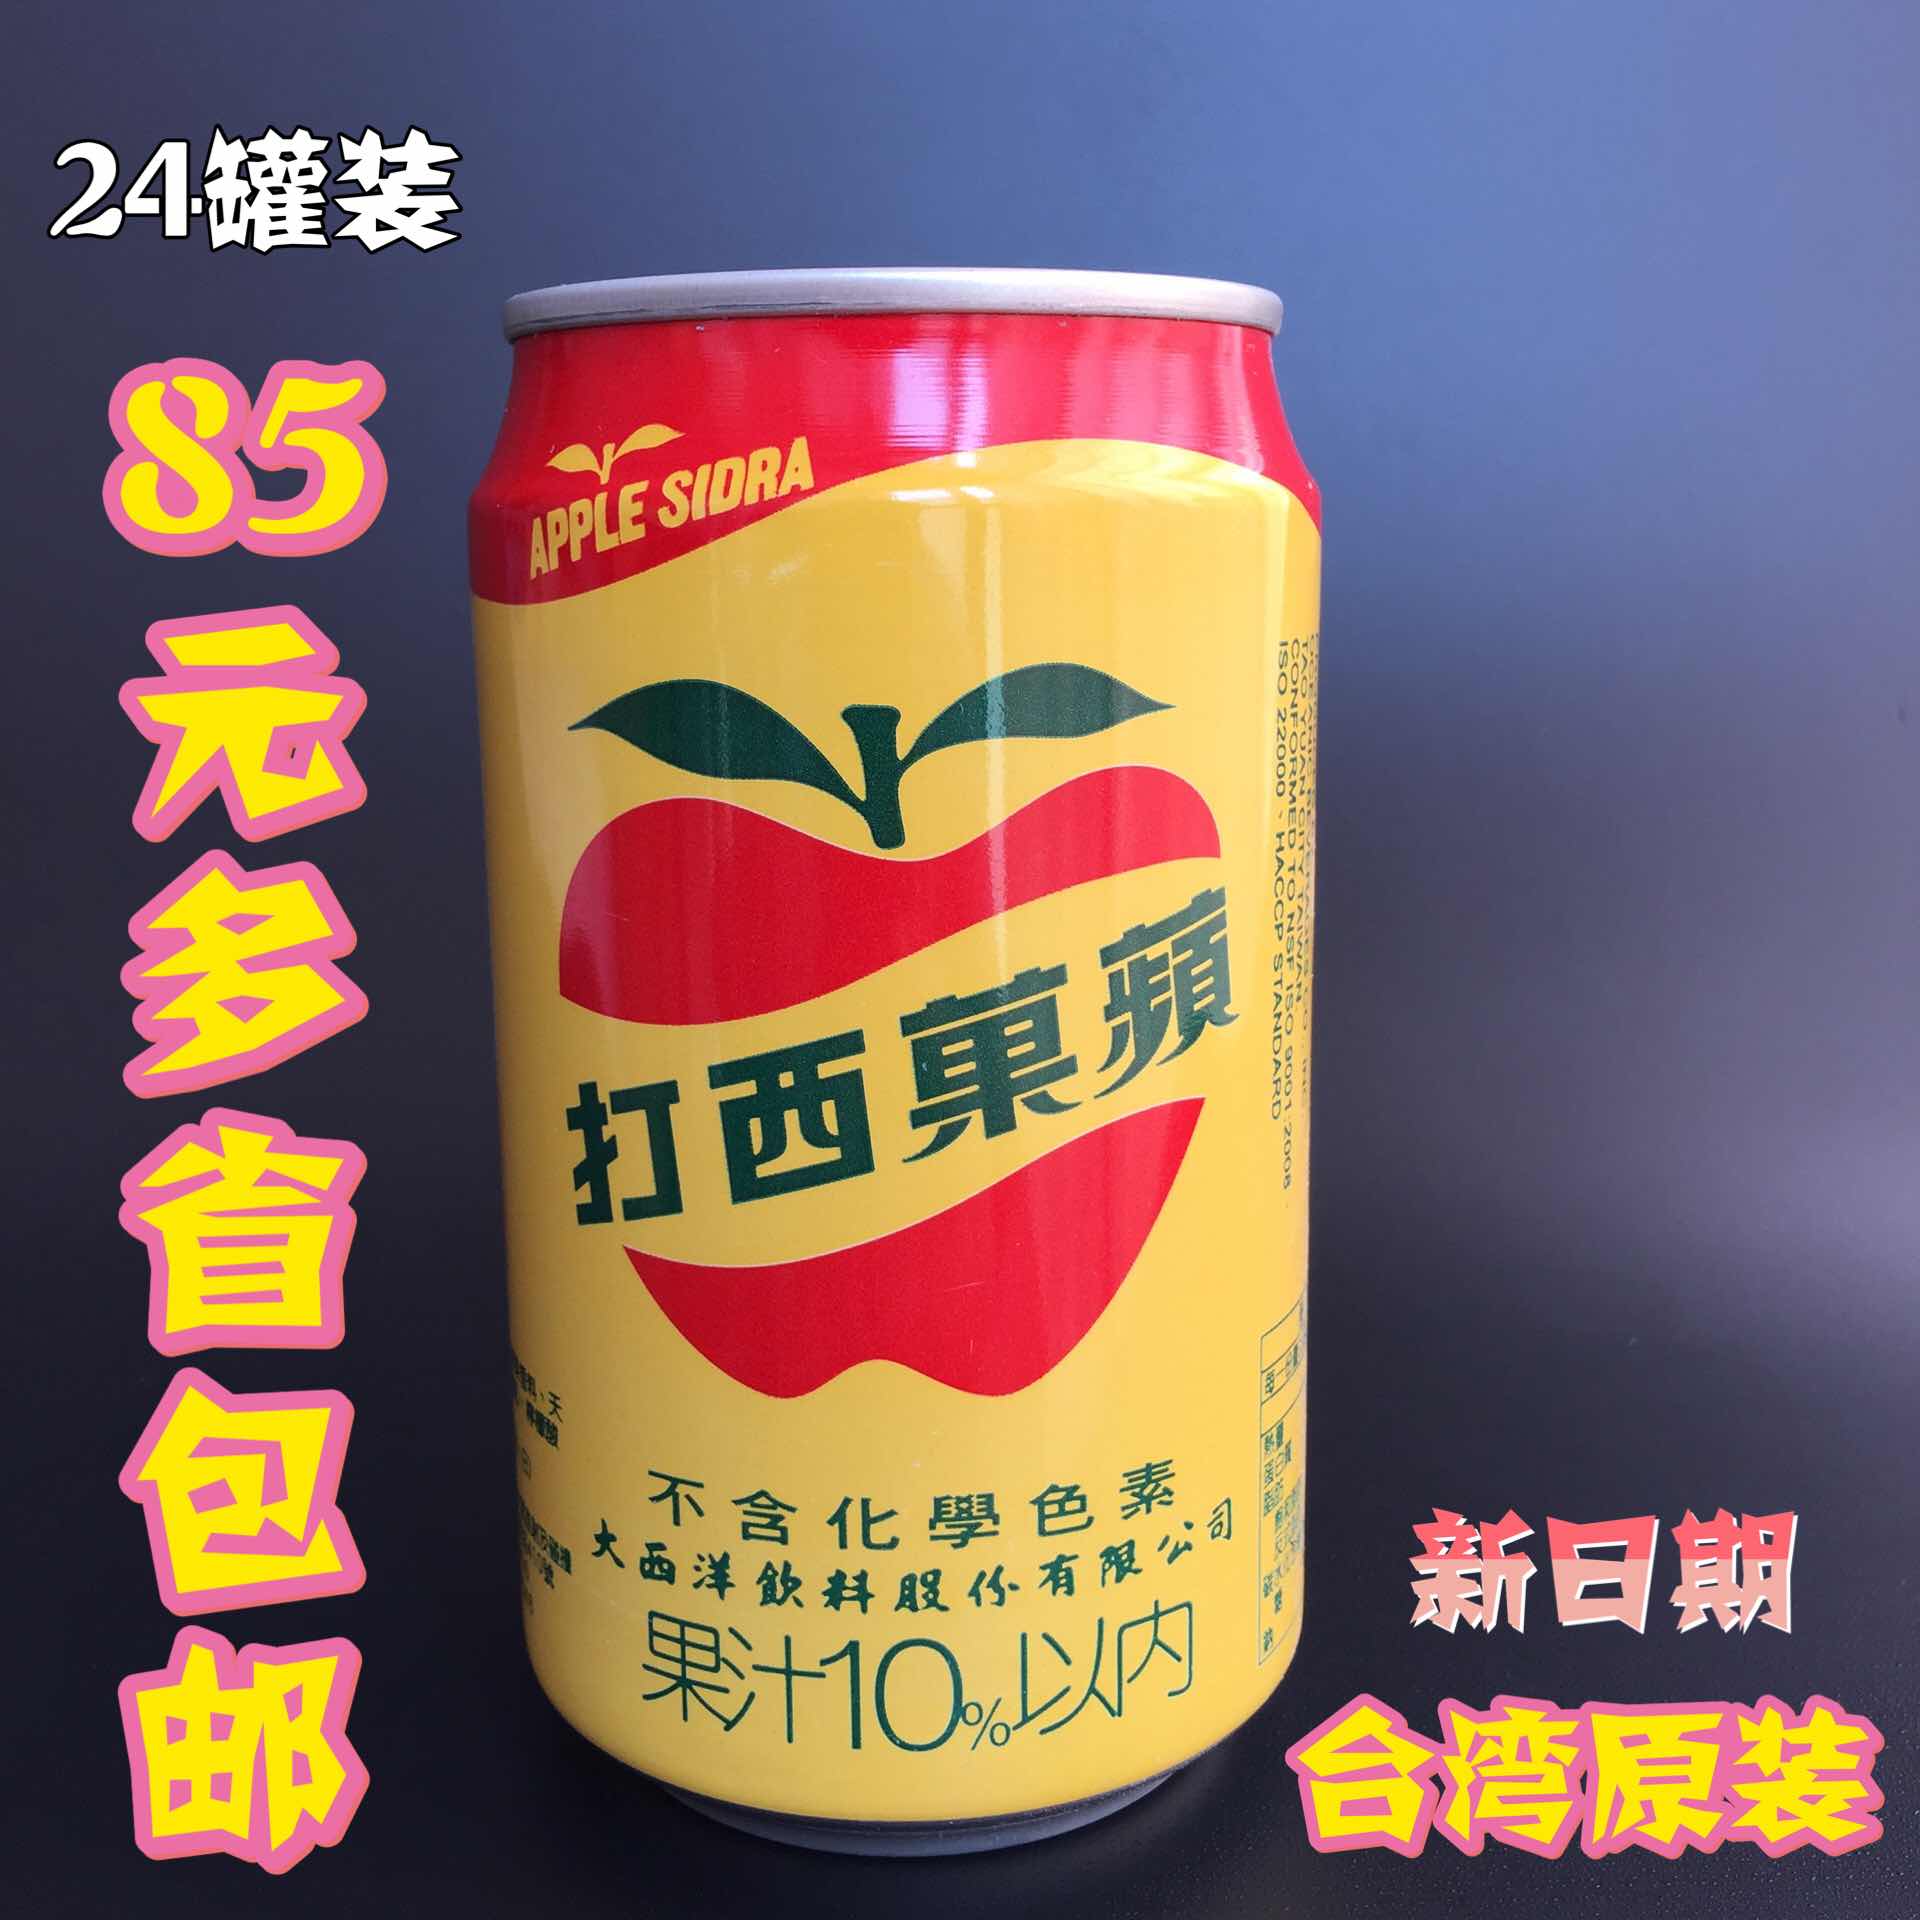 多省包邮 台湾原装碳酸饮料 大西洋苹果西打汽水330ml*24罐水果味折扣优惠信息